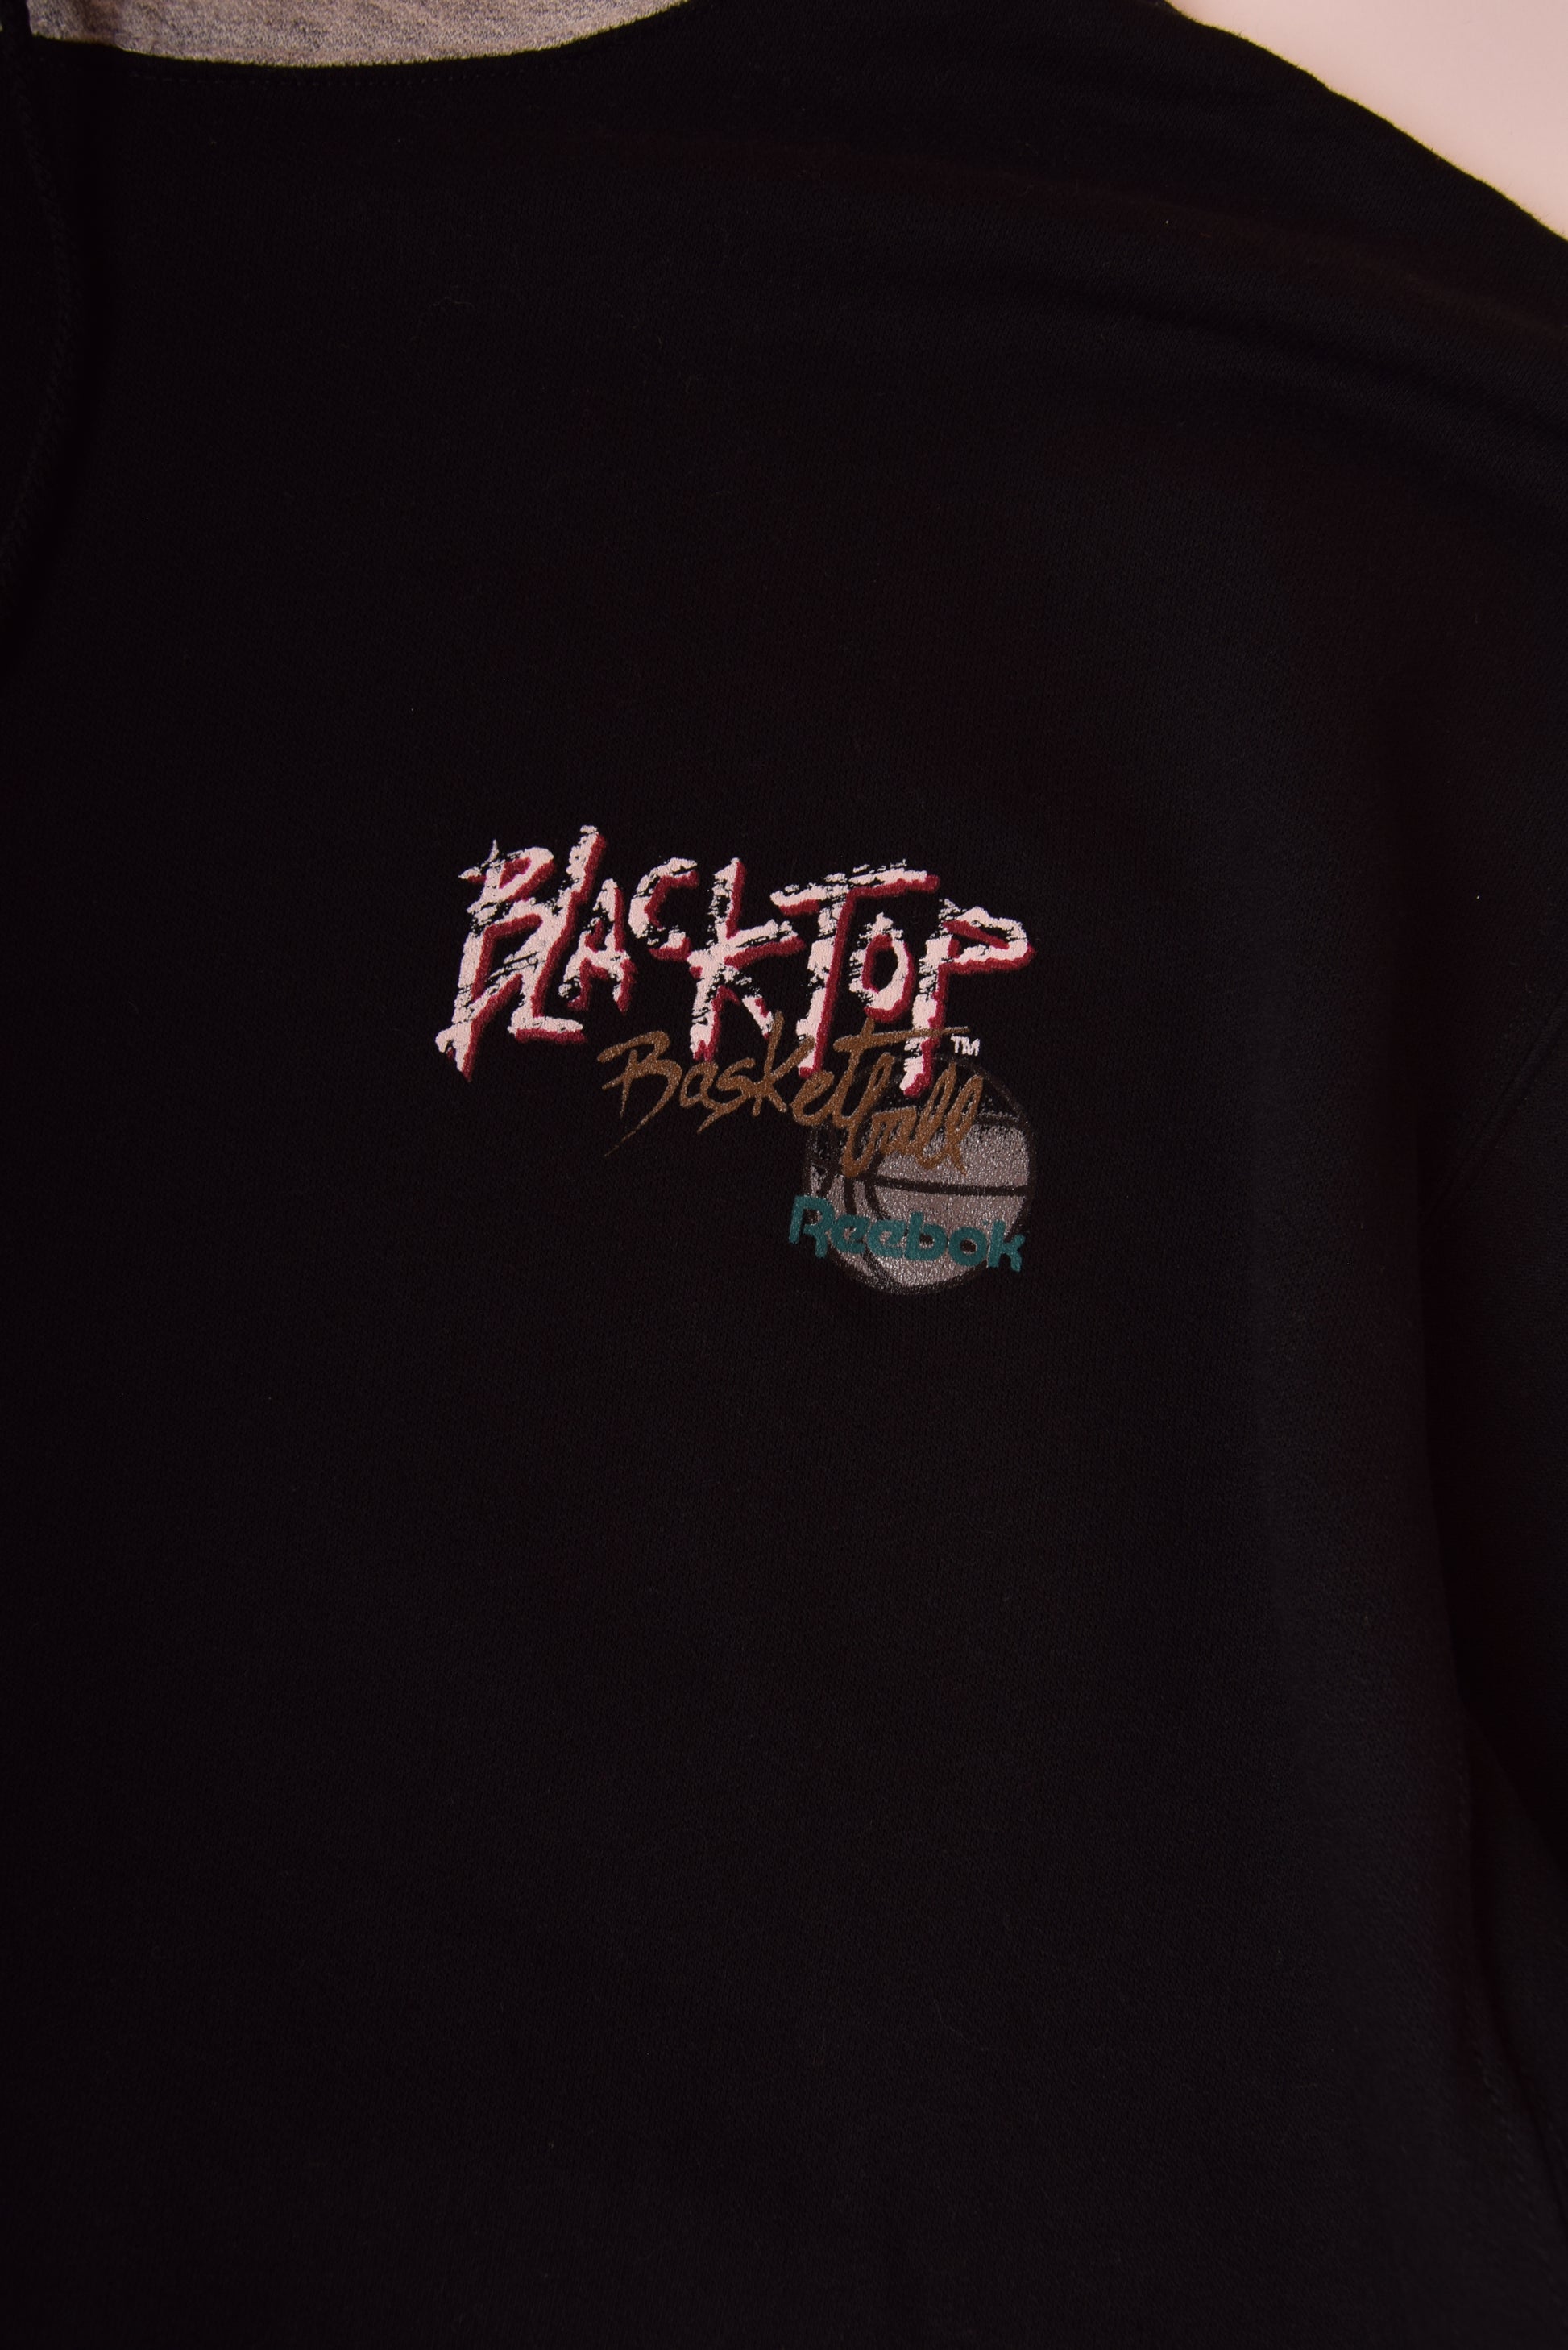 Vintage Reebok BlackTop Basketball Hoodie Sweatshirt Size XL Black Grey